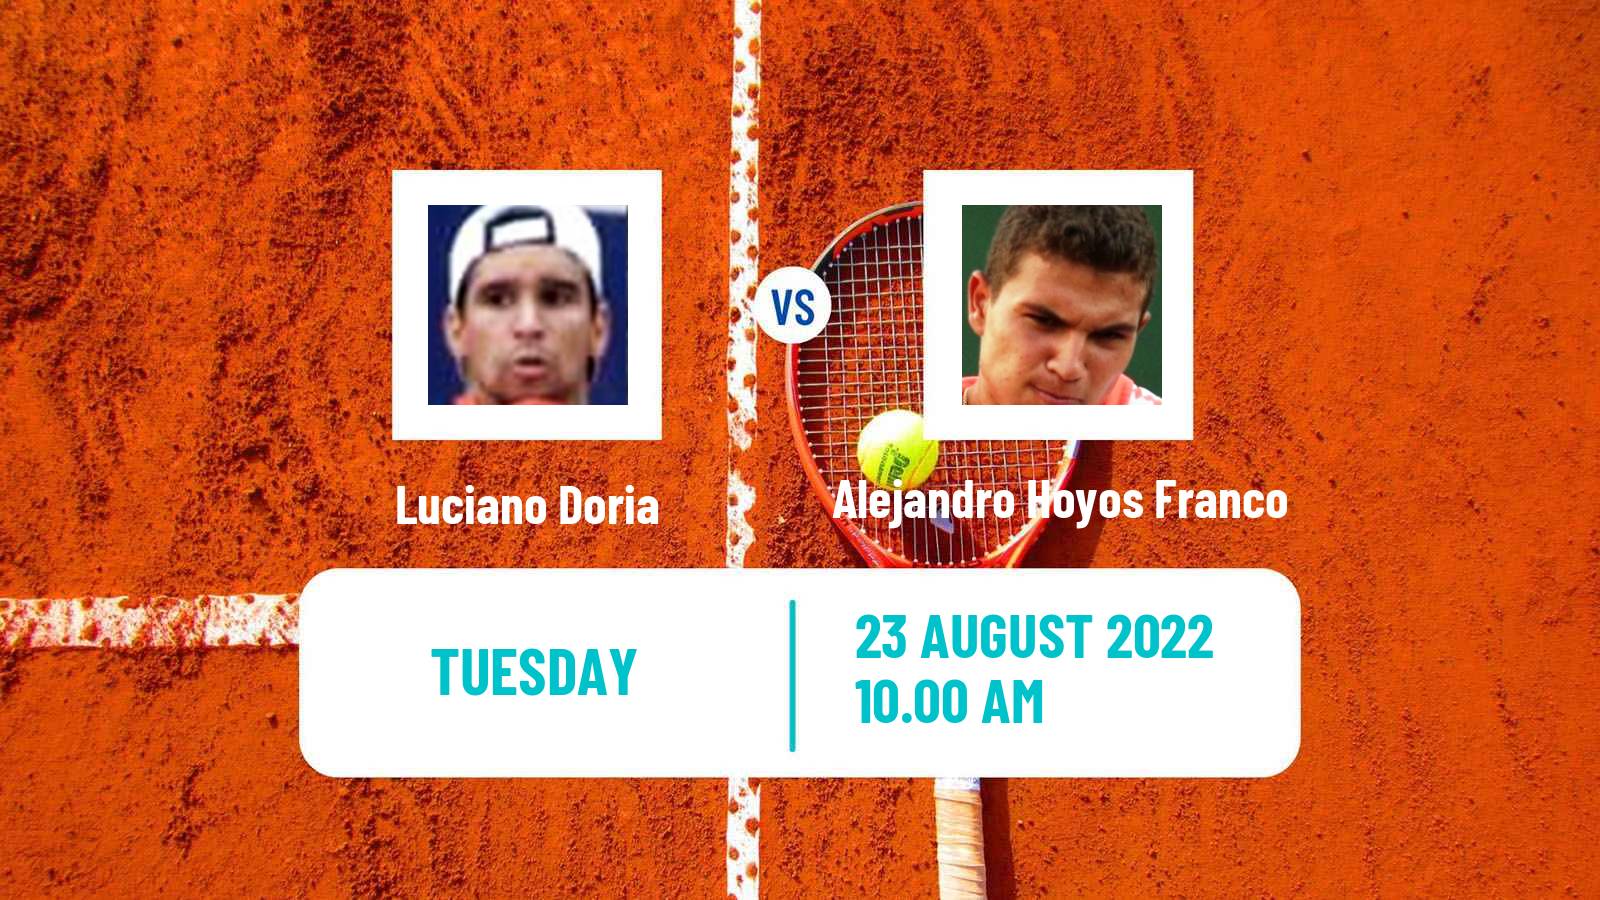 Tennis ITF Tournaments Luciano Doria - Alejandro Hoyos Franco